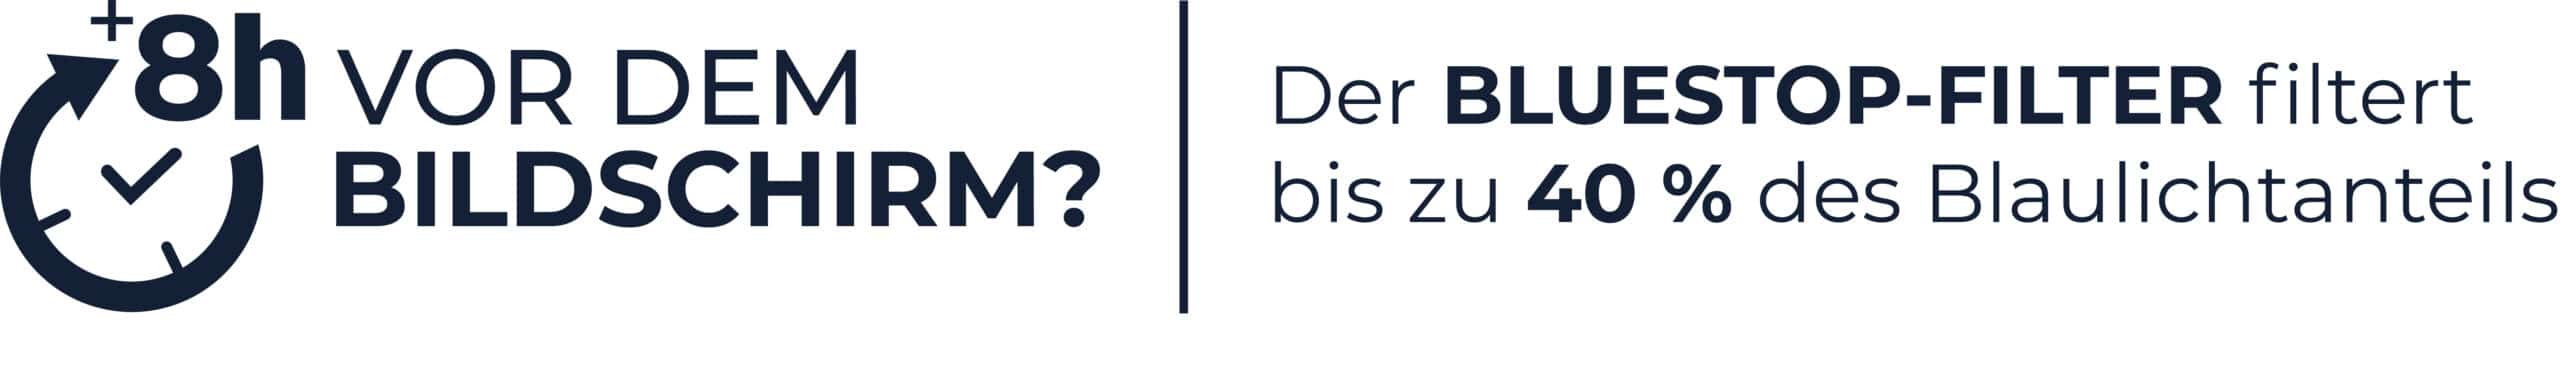 bildschirm-brille-banner